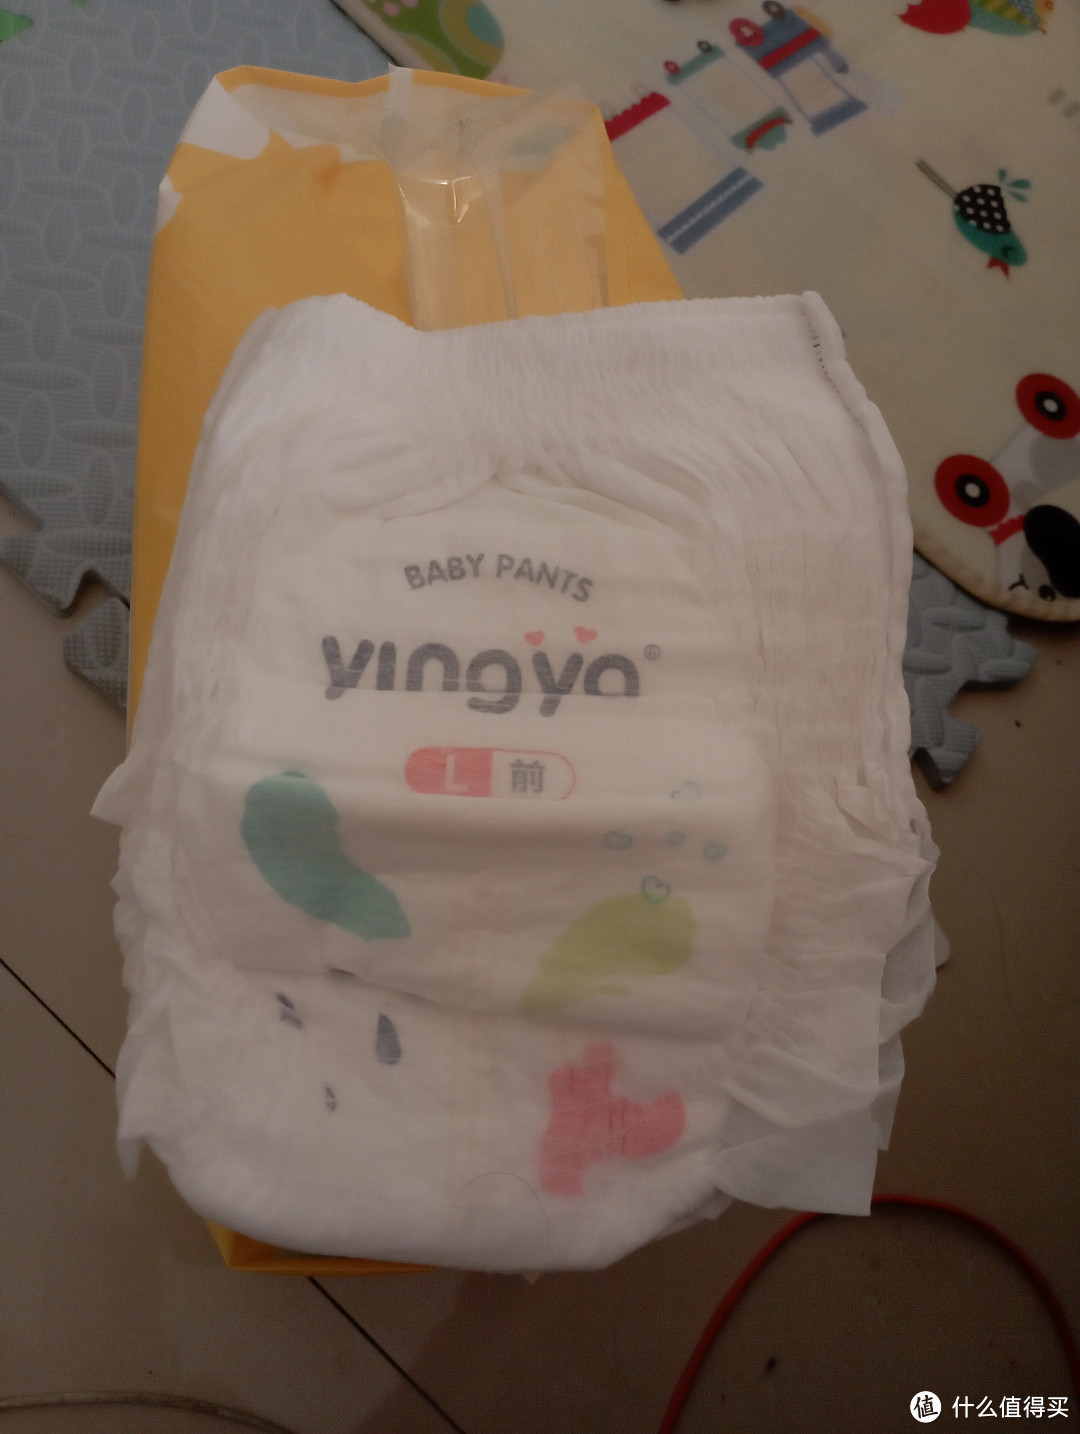 婴芽拉拉裤是一种更适合宝宝活动的纸尿裤类型，使用简便、便于调整和换取